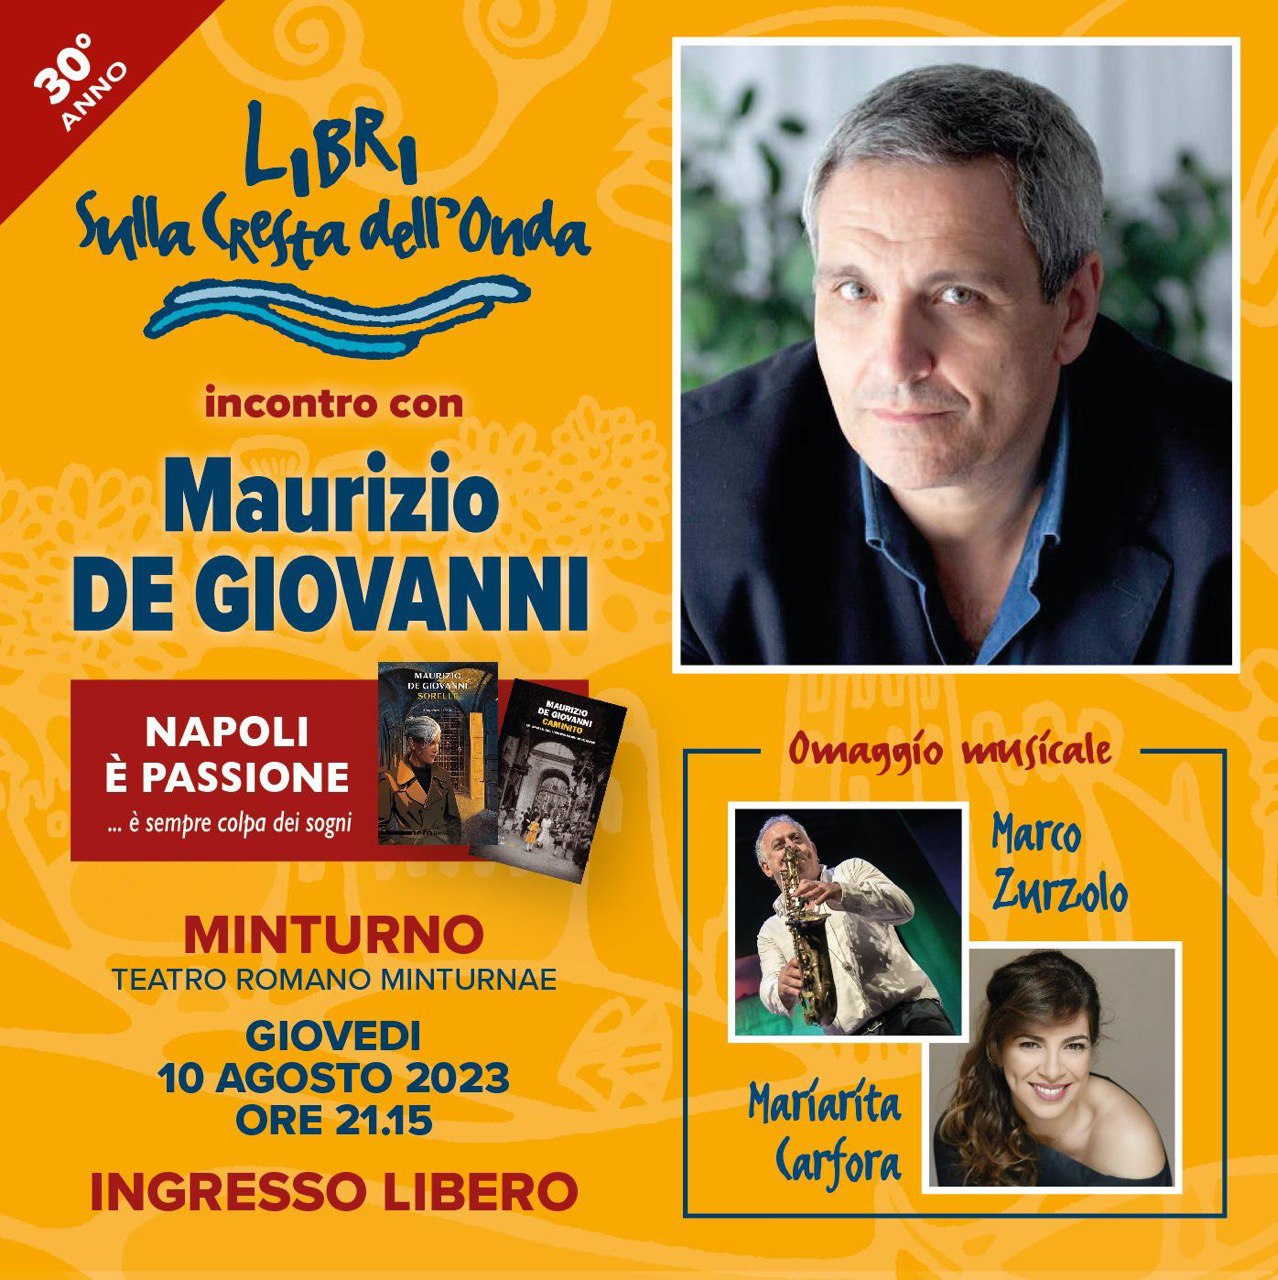 Libri sulla cresta dell’onda: incontro con Maurizio De Giovanni “Napoli è passione”